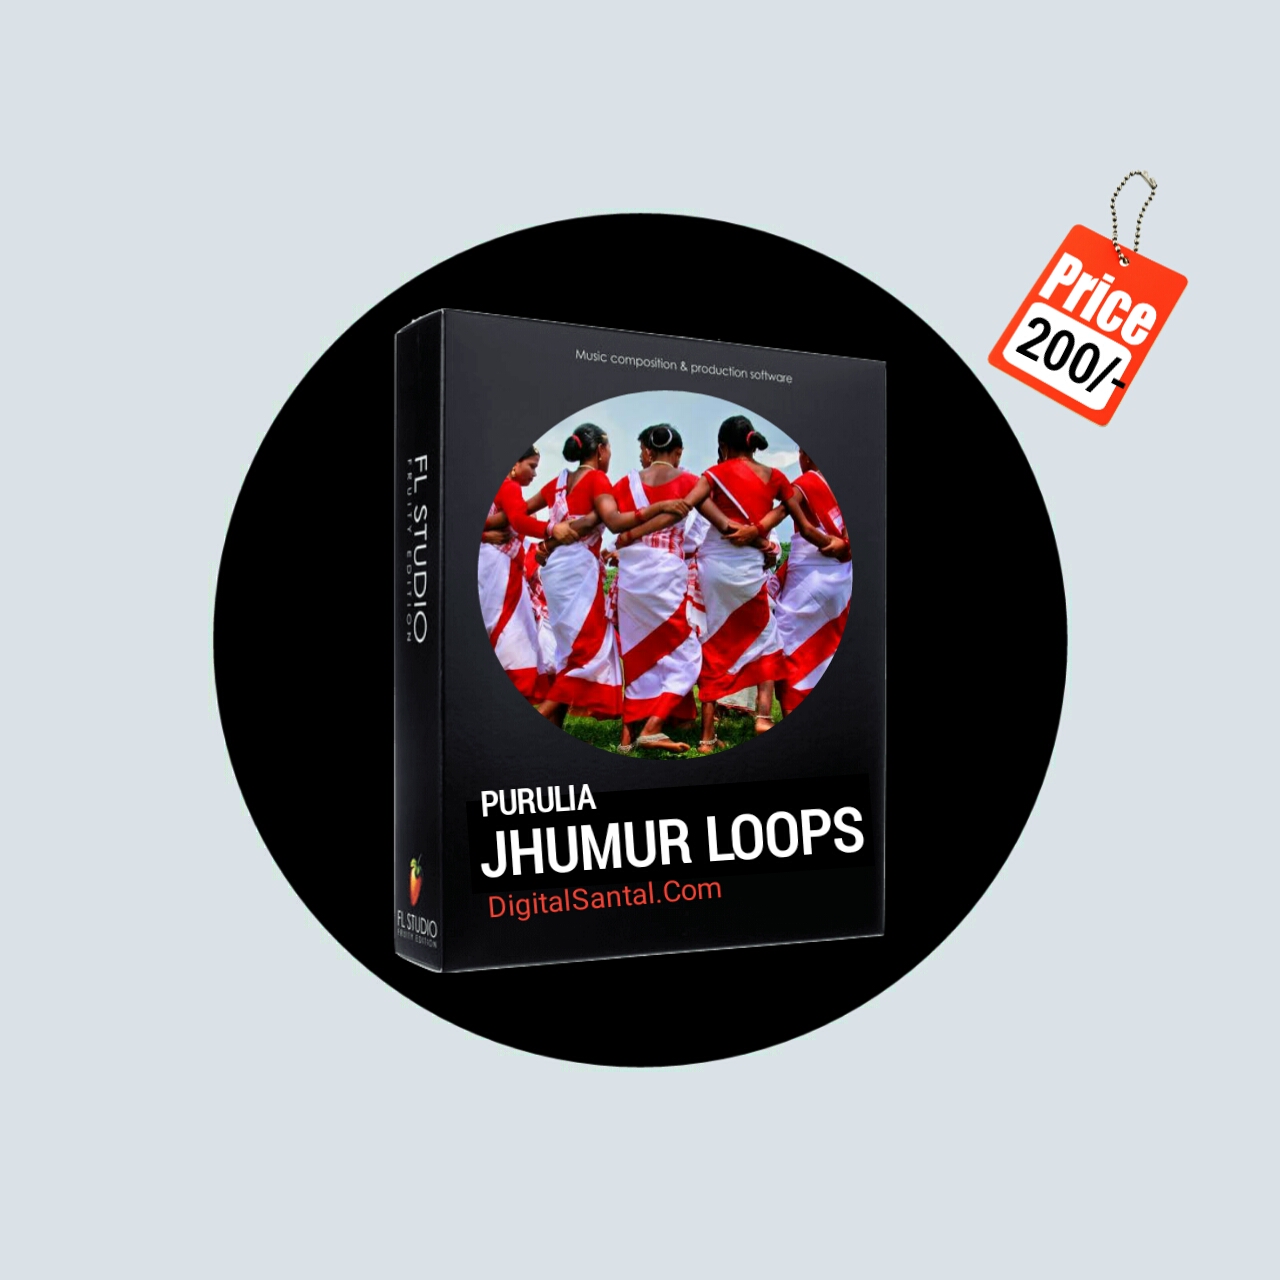 purulia jhumur loops pack free download,
jhumur loops pack fl studio,
jhumur pattren loops beat pack,
purulia pattren beat pack download,
jhumur break pattren loops,
